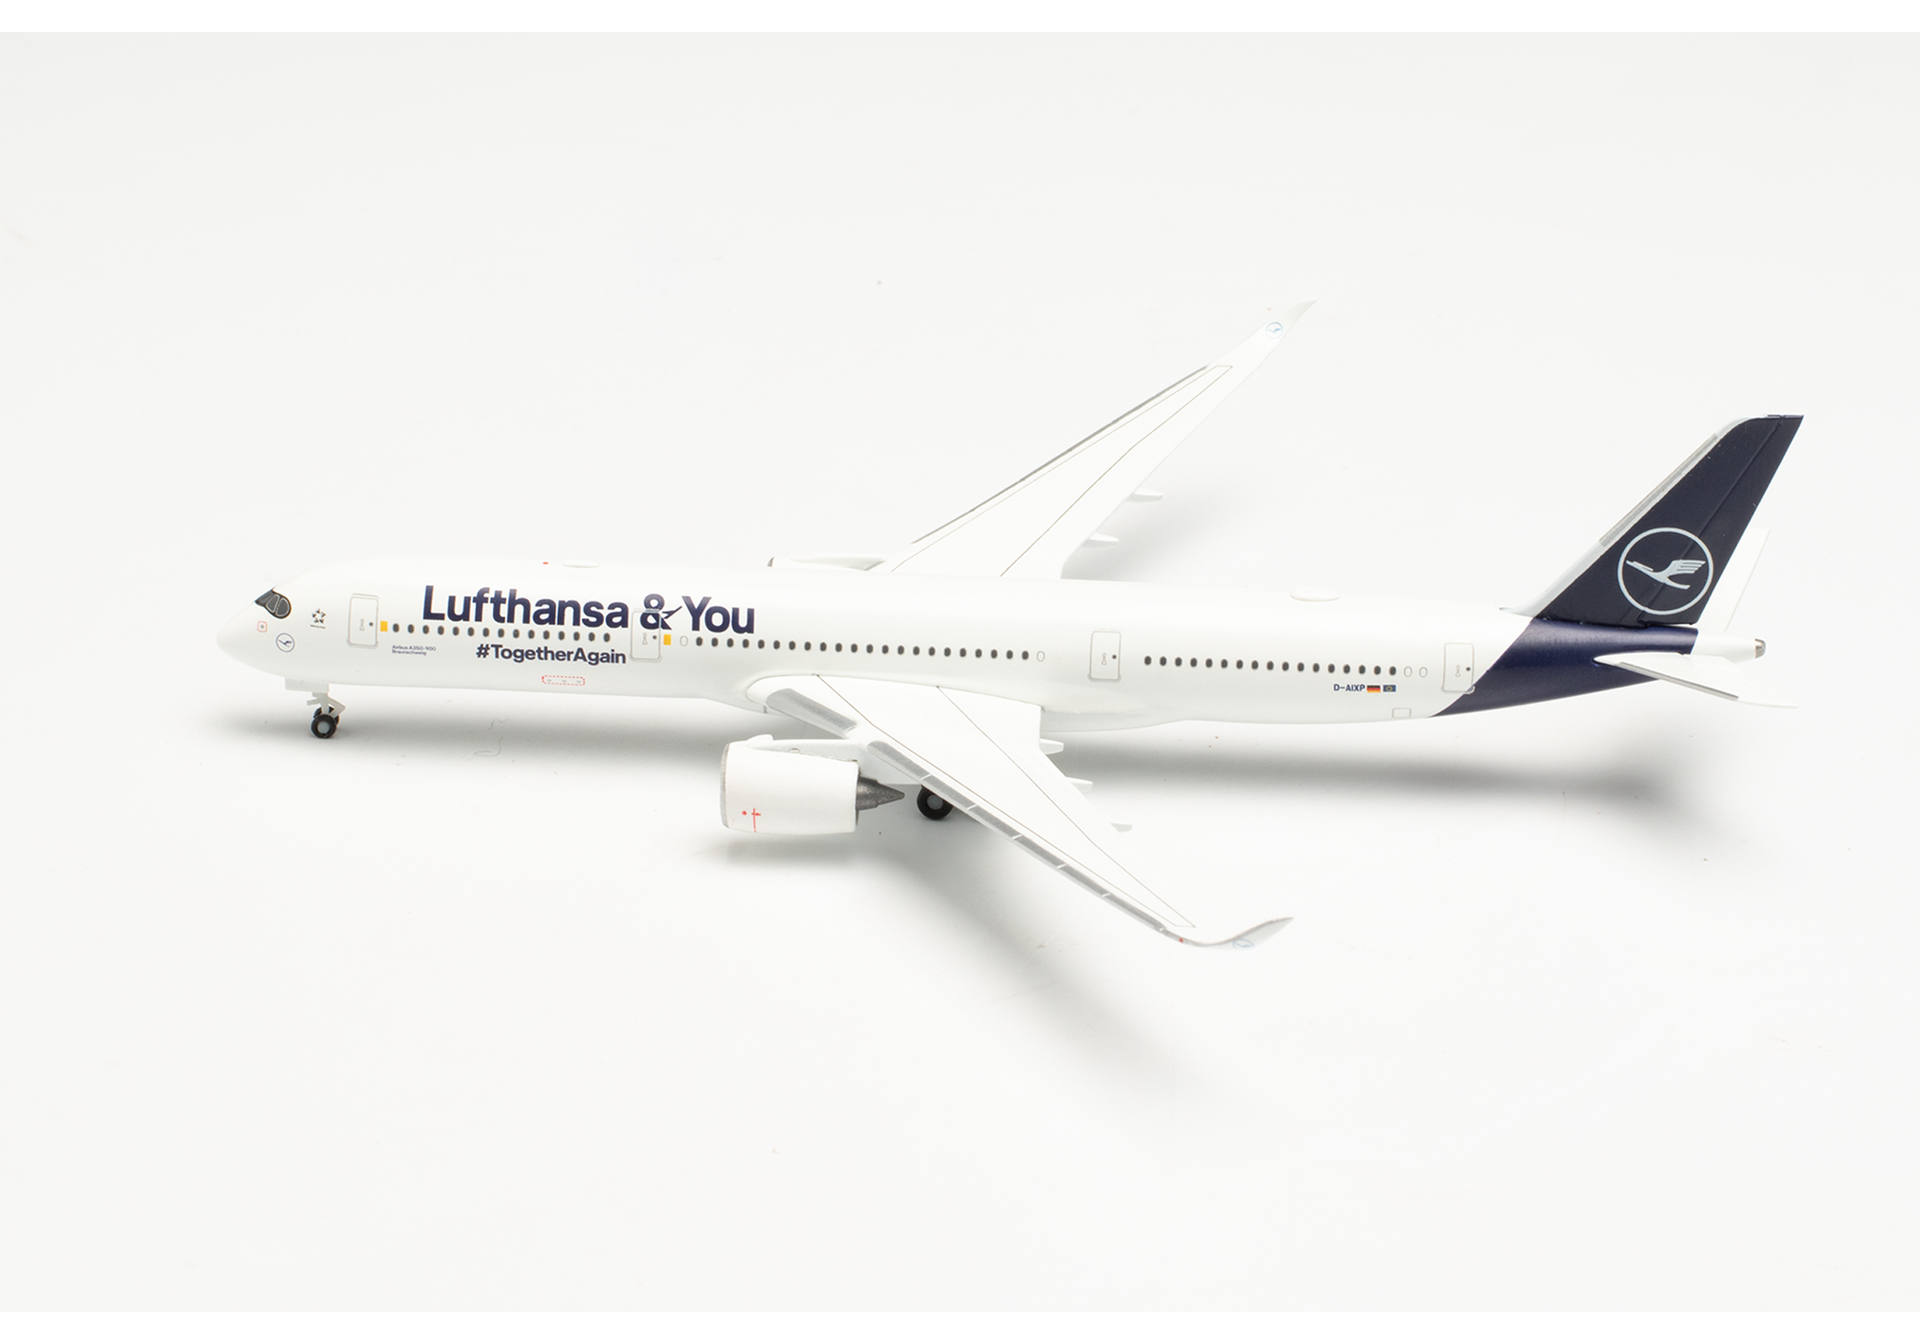   Lufthansa Airbus A350-900 Lufthansa & You  D-AIXP, 1:500 herpa 536066. # 1 hobbyplus.ru